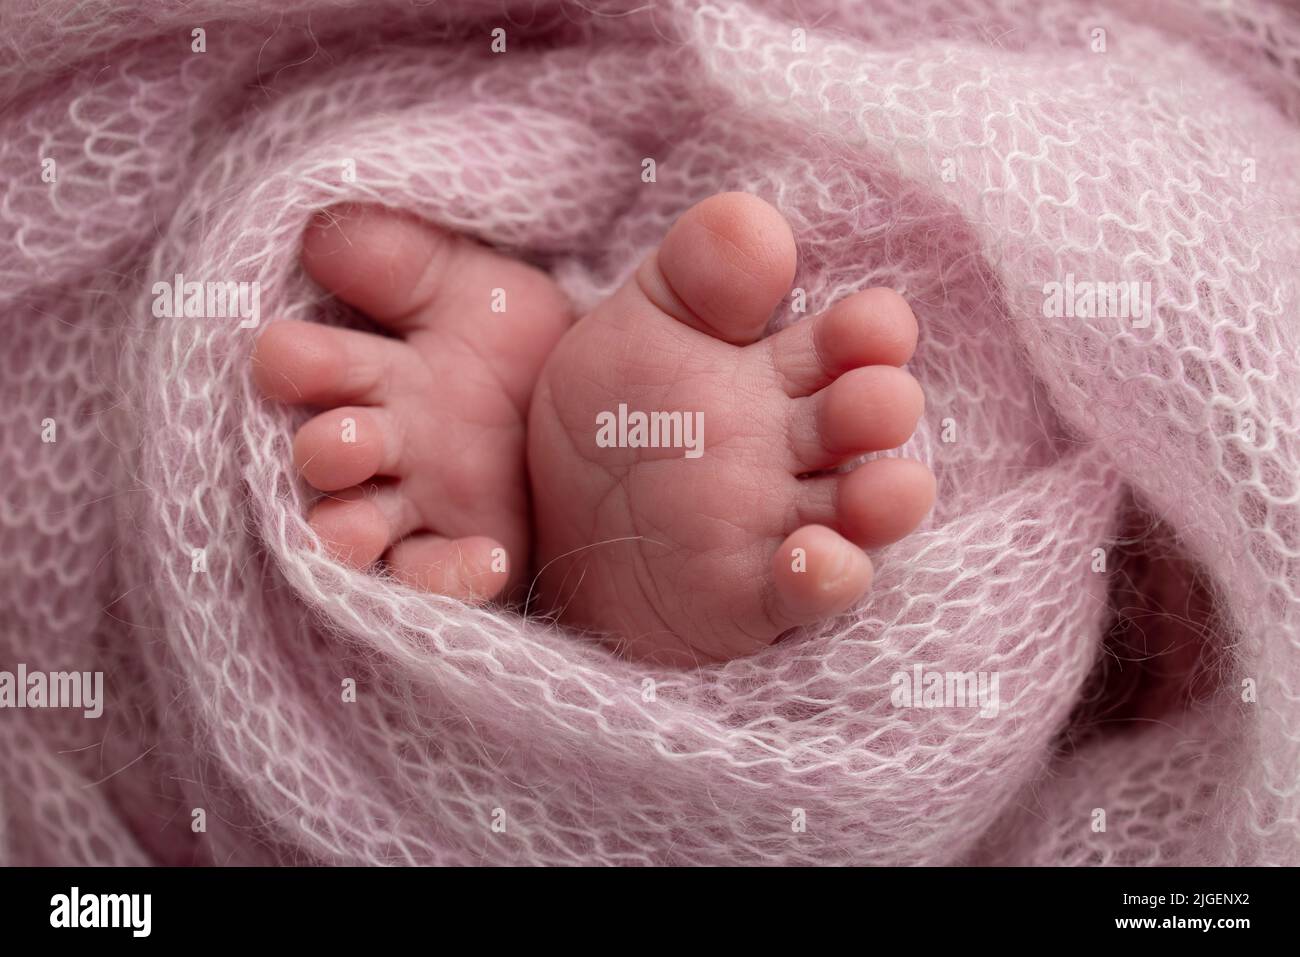 Pieds doux d'un nouveau-né dans une couverture en laine rose. Gros plan des orteils, des talons et des pieds d'un nouveau-né. Photographie macro du pied Banque D'Images